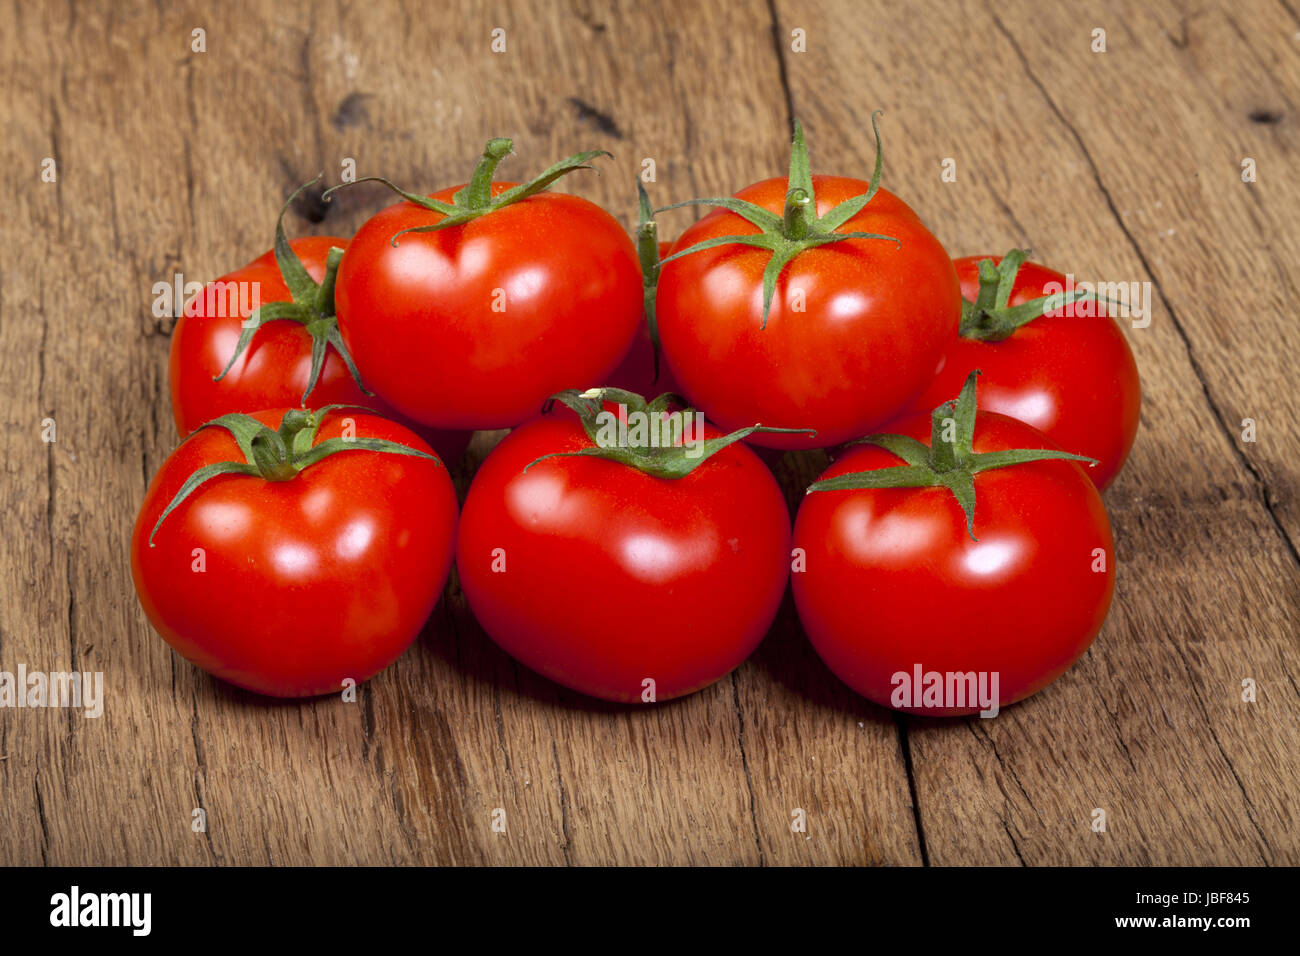 Ein Haufen reifer Tomaten auf einem Holztisch Stock Photo